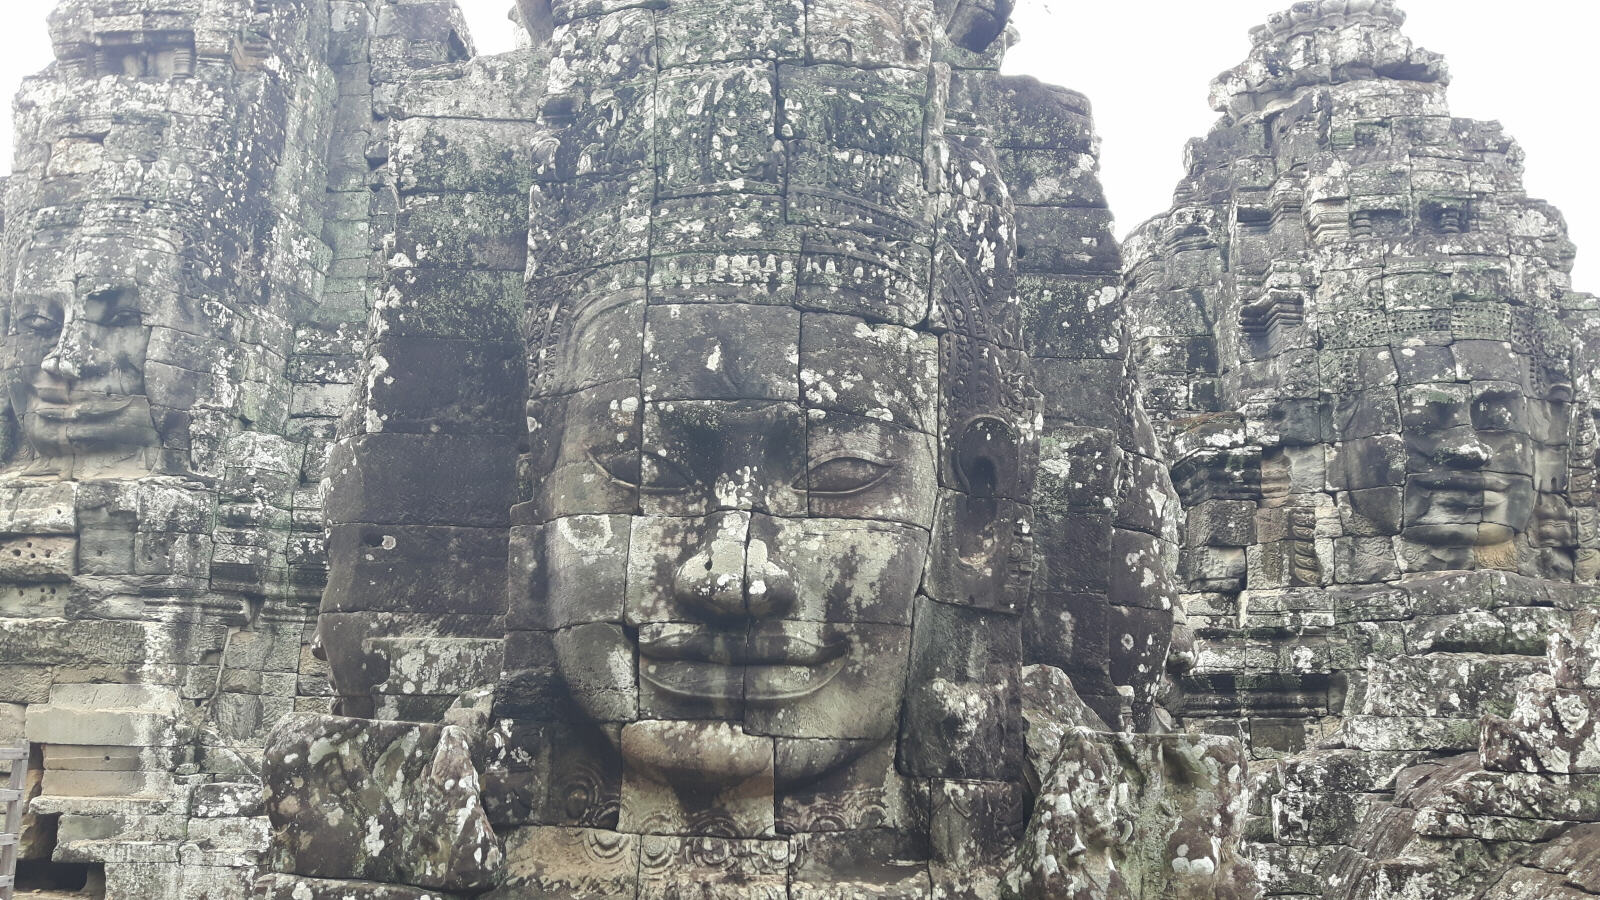 The Bayon at Angkor, Cambodia